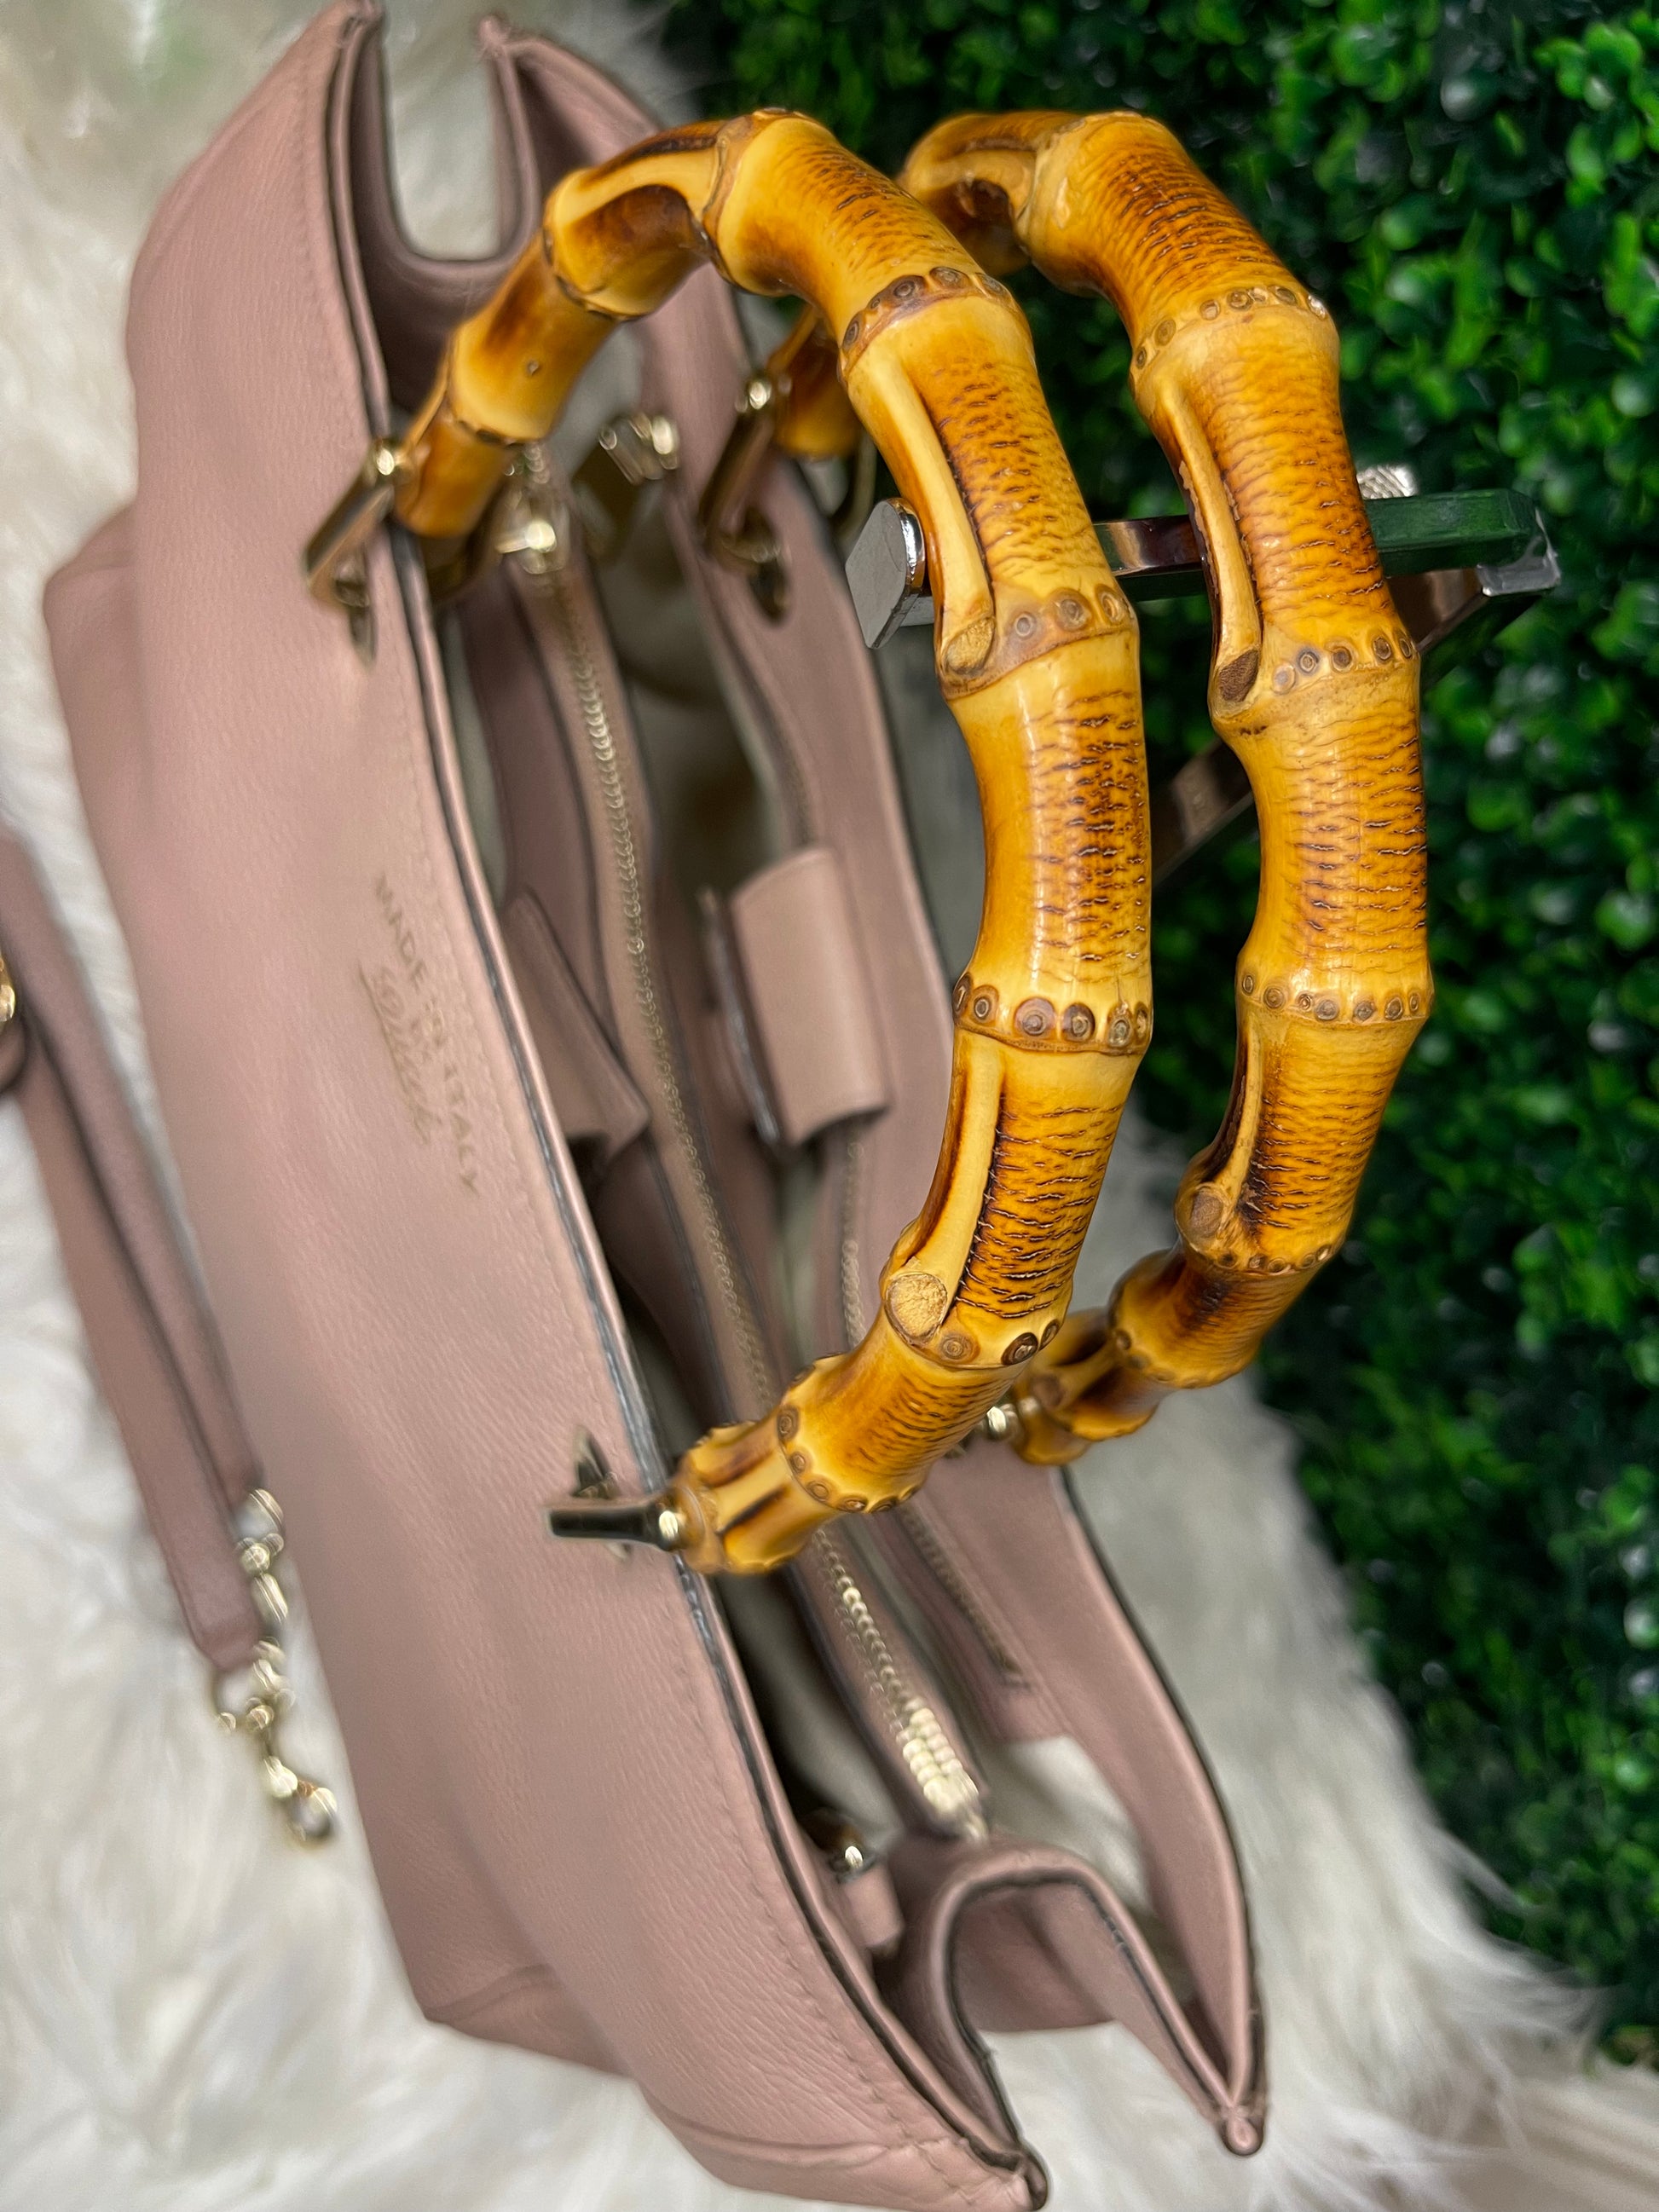 Gucci Bamboo Shopper Mini Leather Top Handle Bag in Metallic